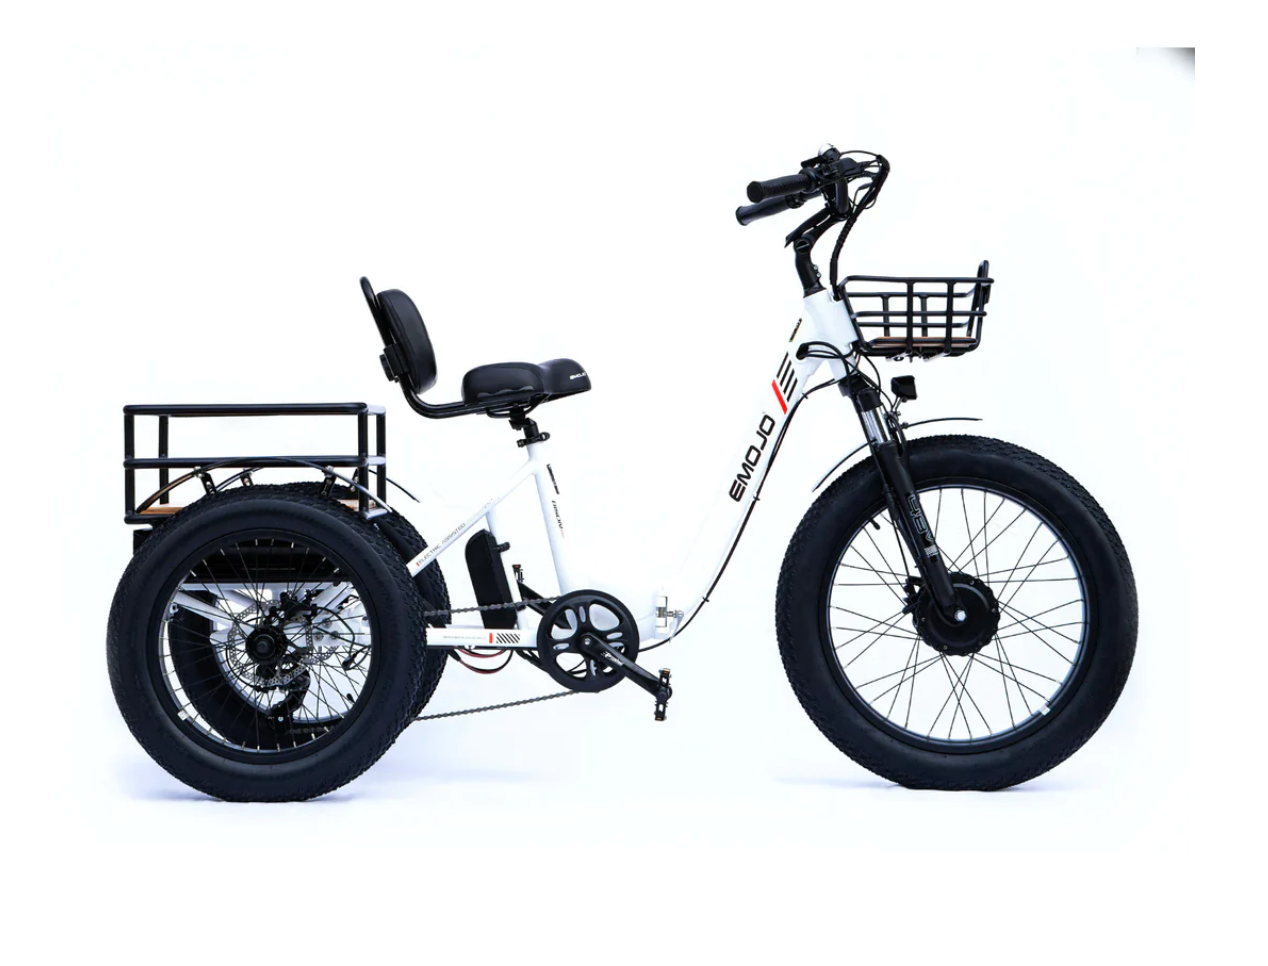 Emojo Bison Pro Folding Electric Trike Bike